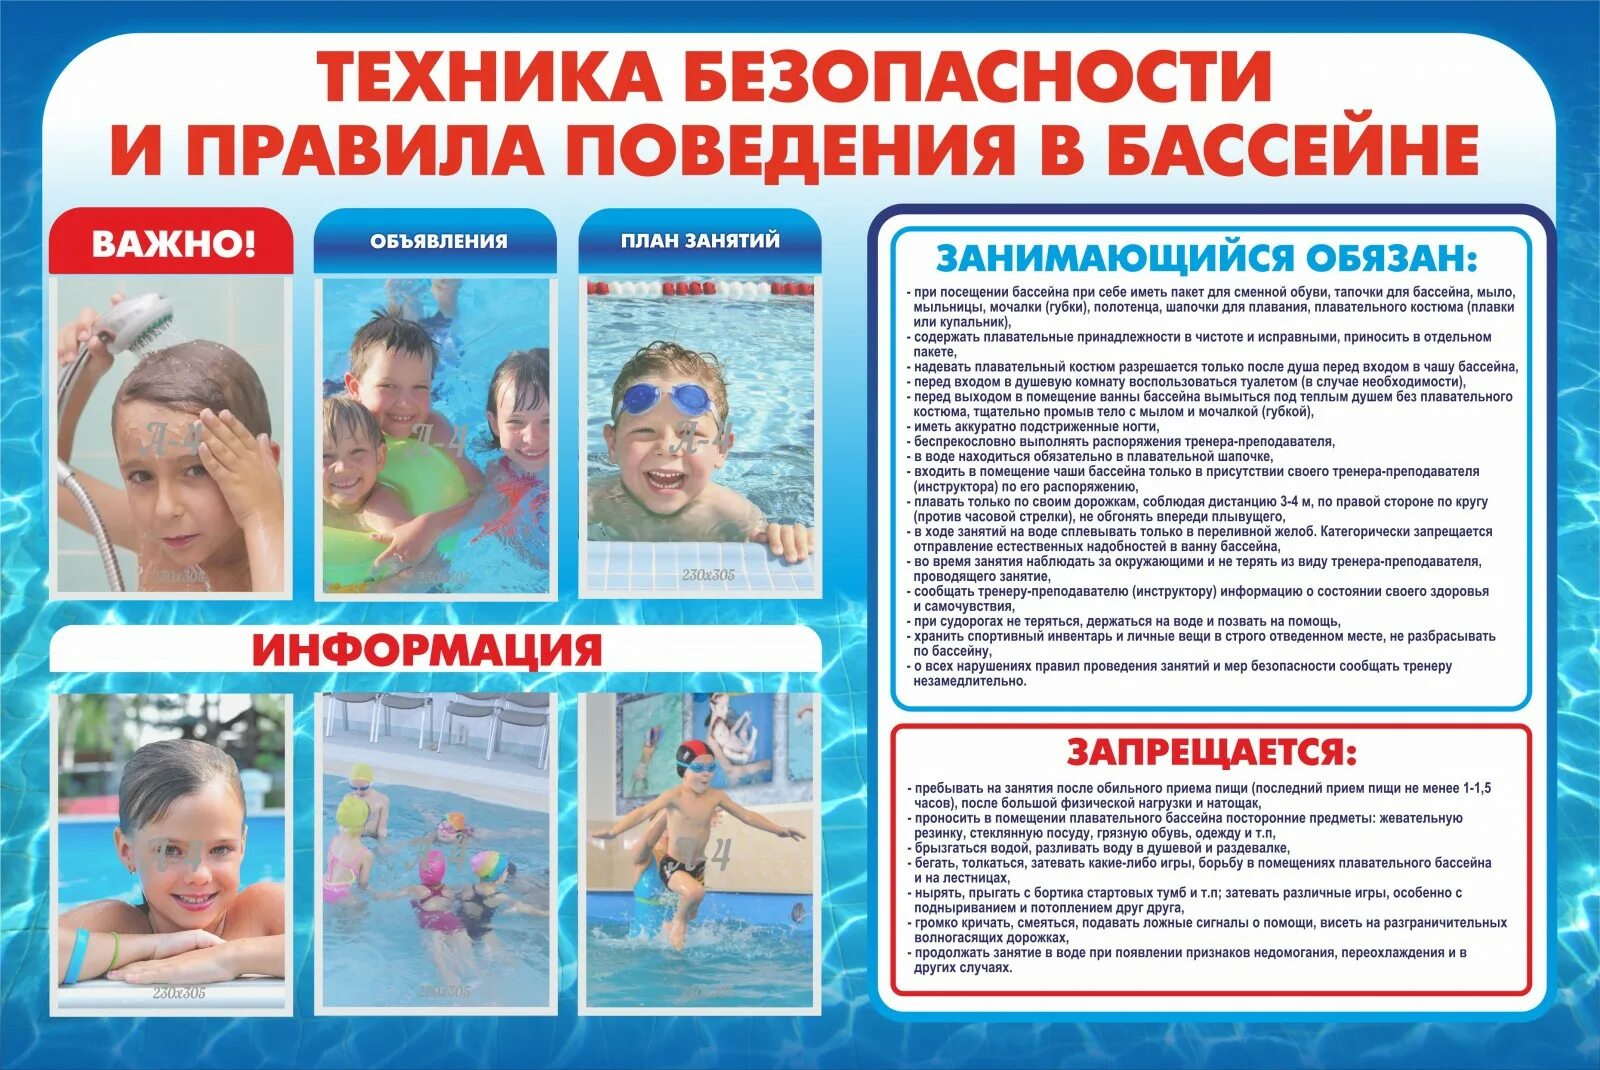 Как часто можно купаться детям в лоу. Правила поведения в бассейне. Техника безопасности в бассейне. Правилаьбезопасности в бассейне. Правила техники безопасности в бассейне.